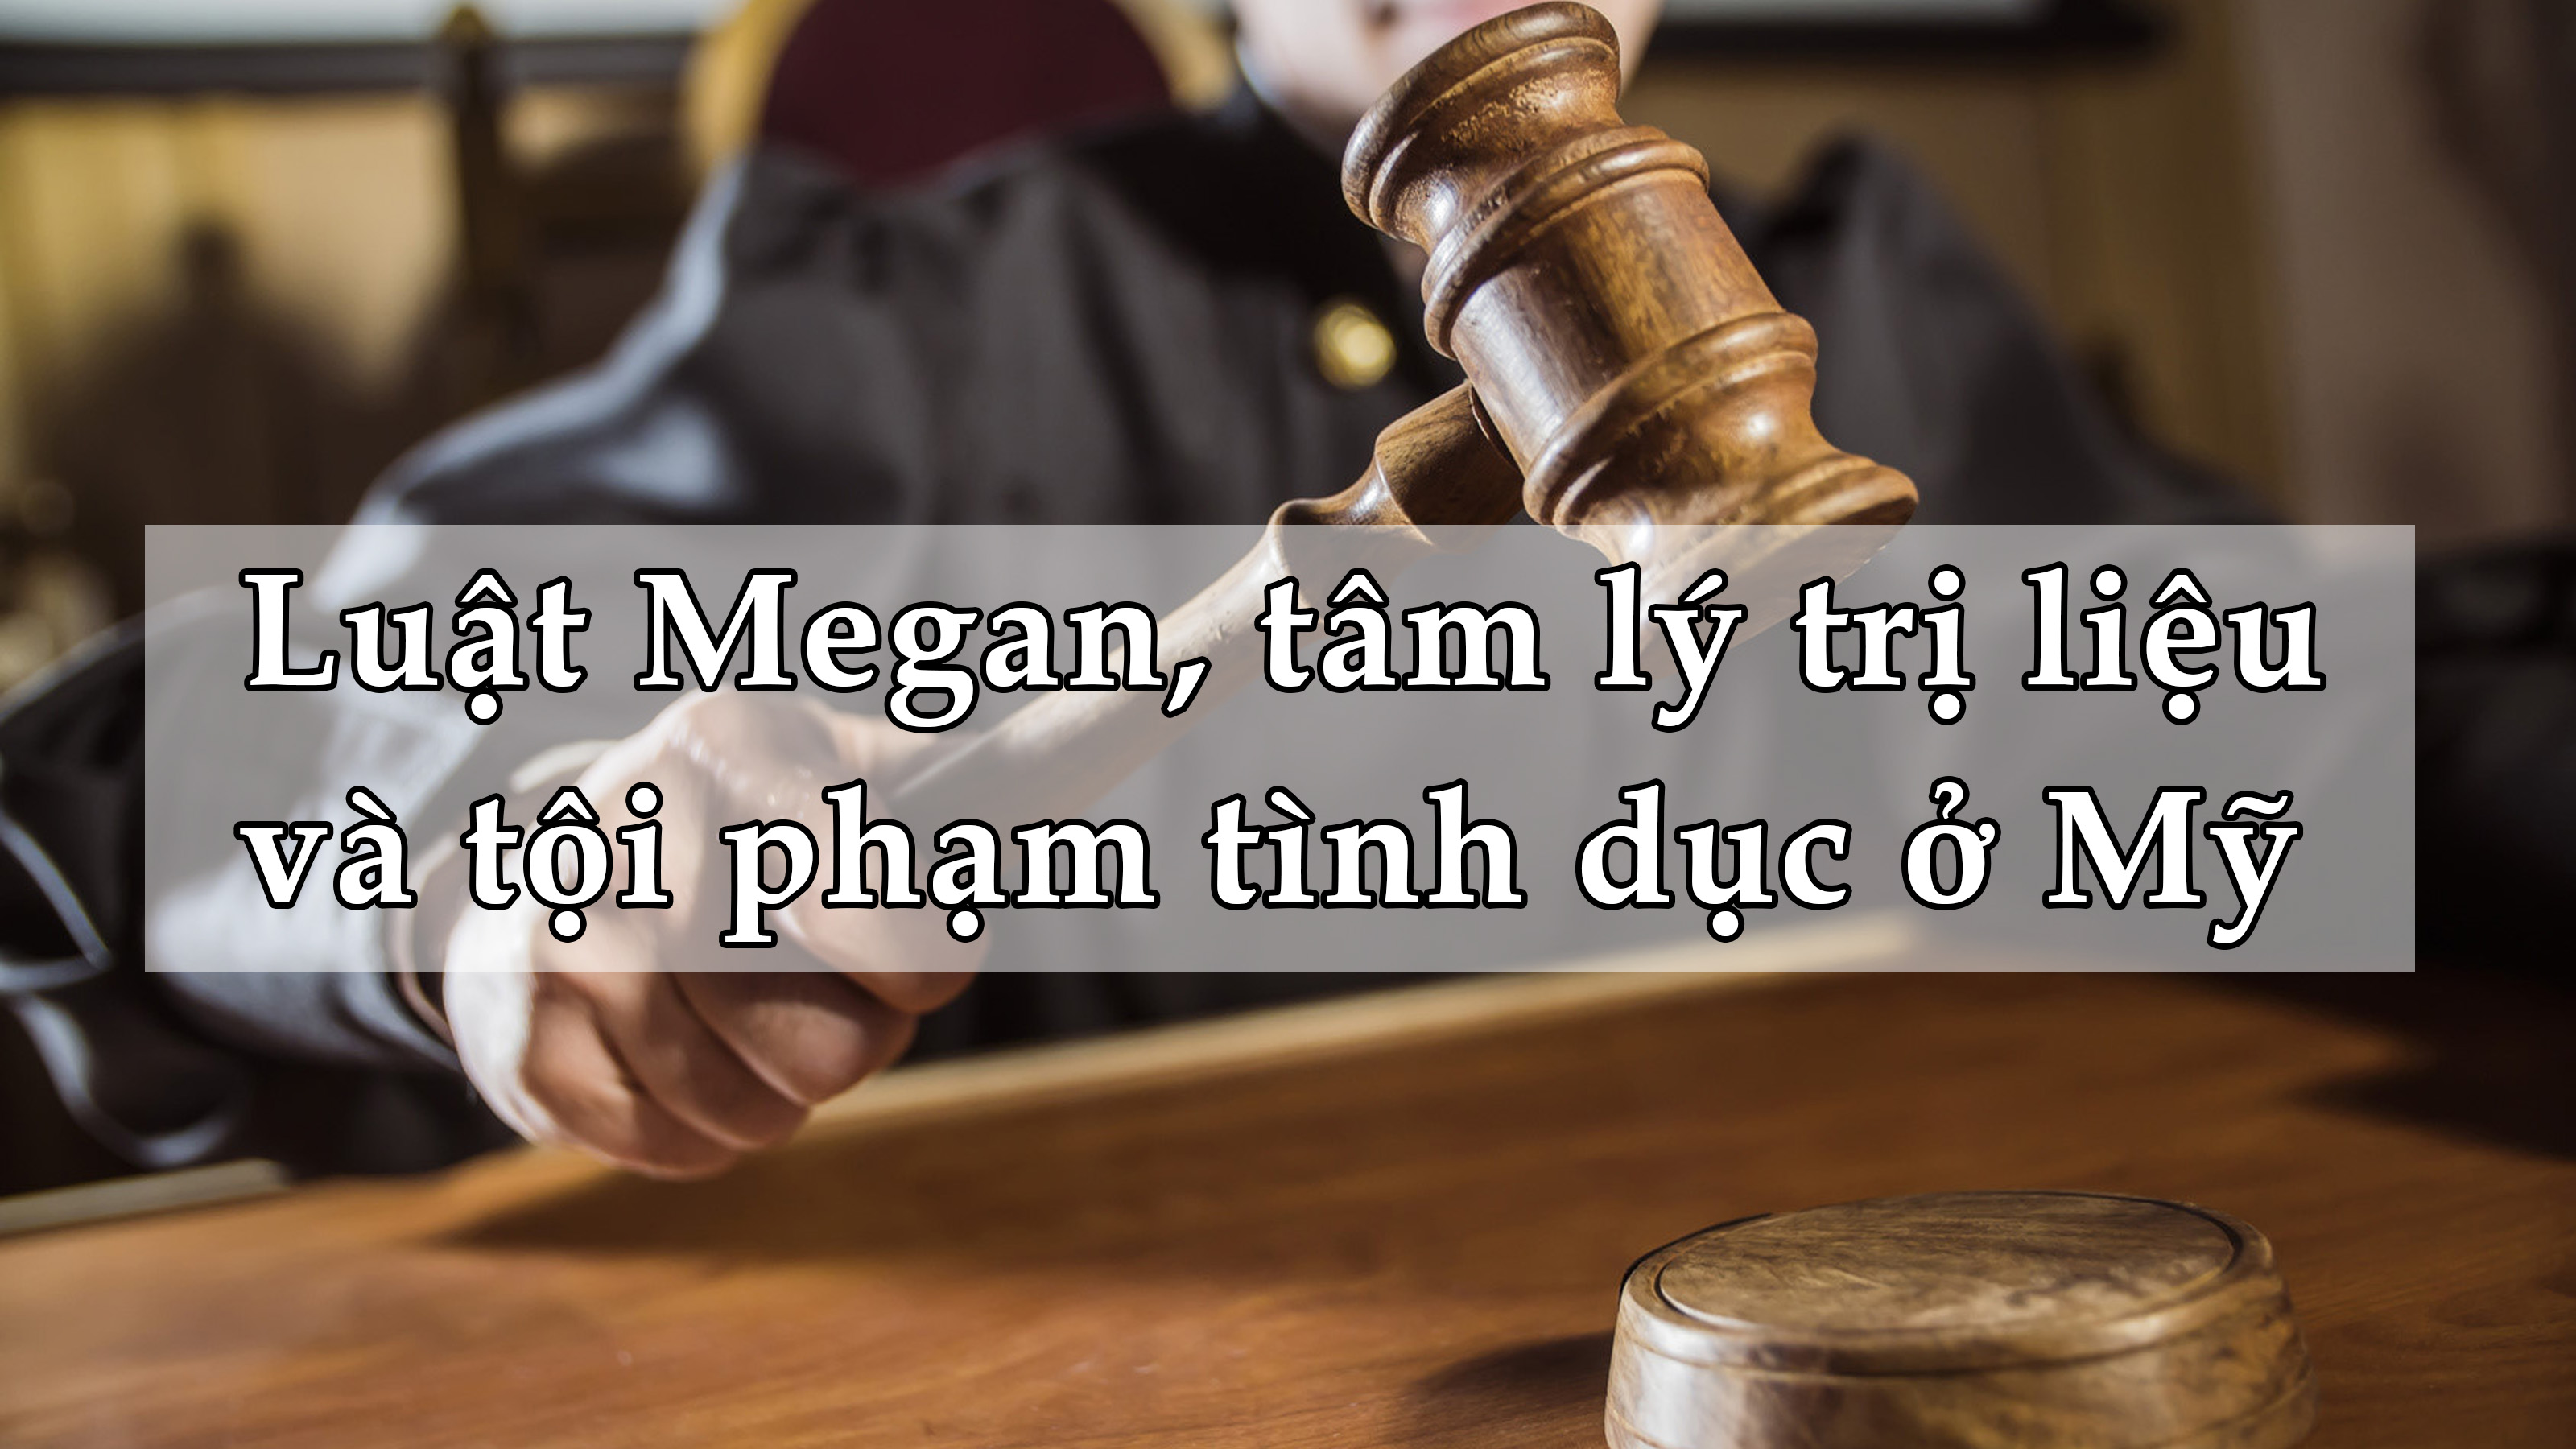 Luật Megan, tâm lý trị liệu và tội phạm tình dục ở Mỹ